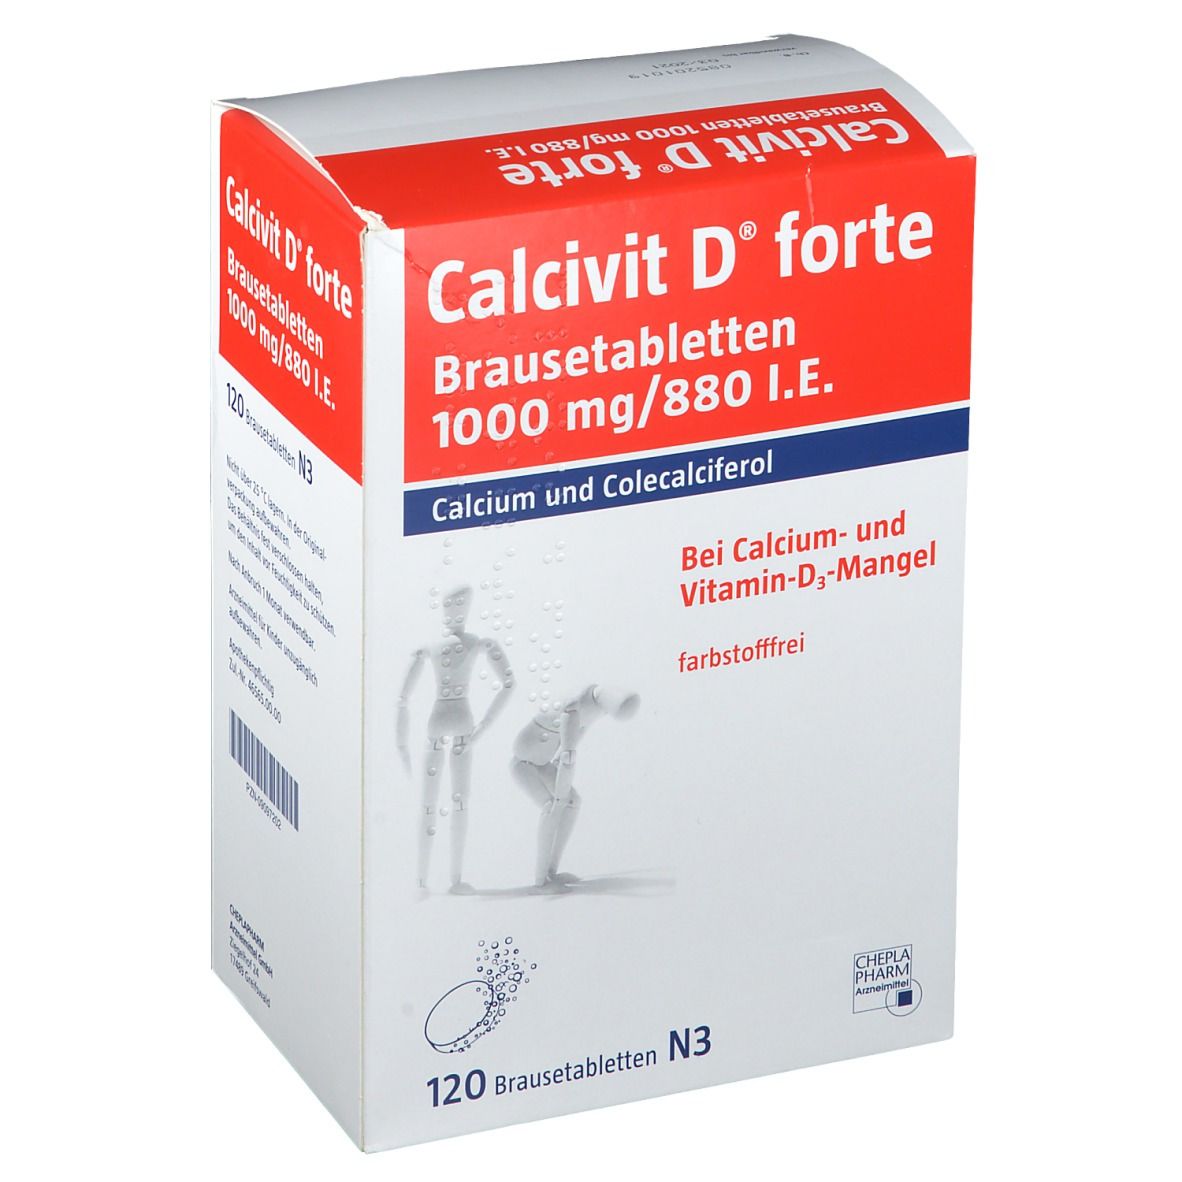 Calcivit D® forte Brausetabletten, 1000 mg/880 I.E.